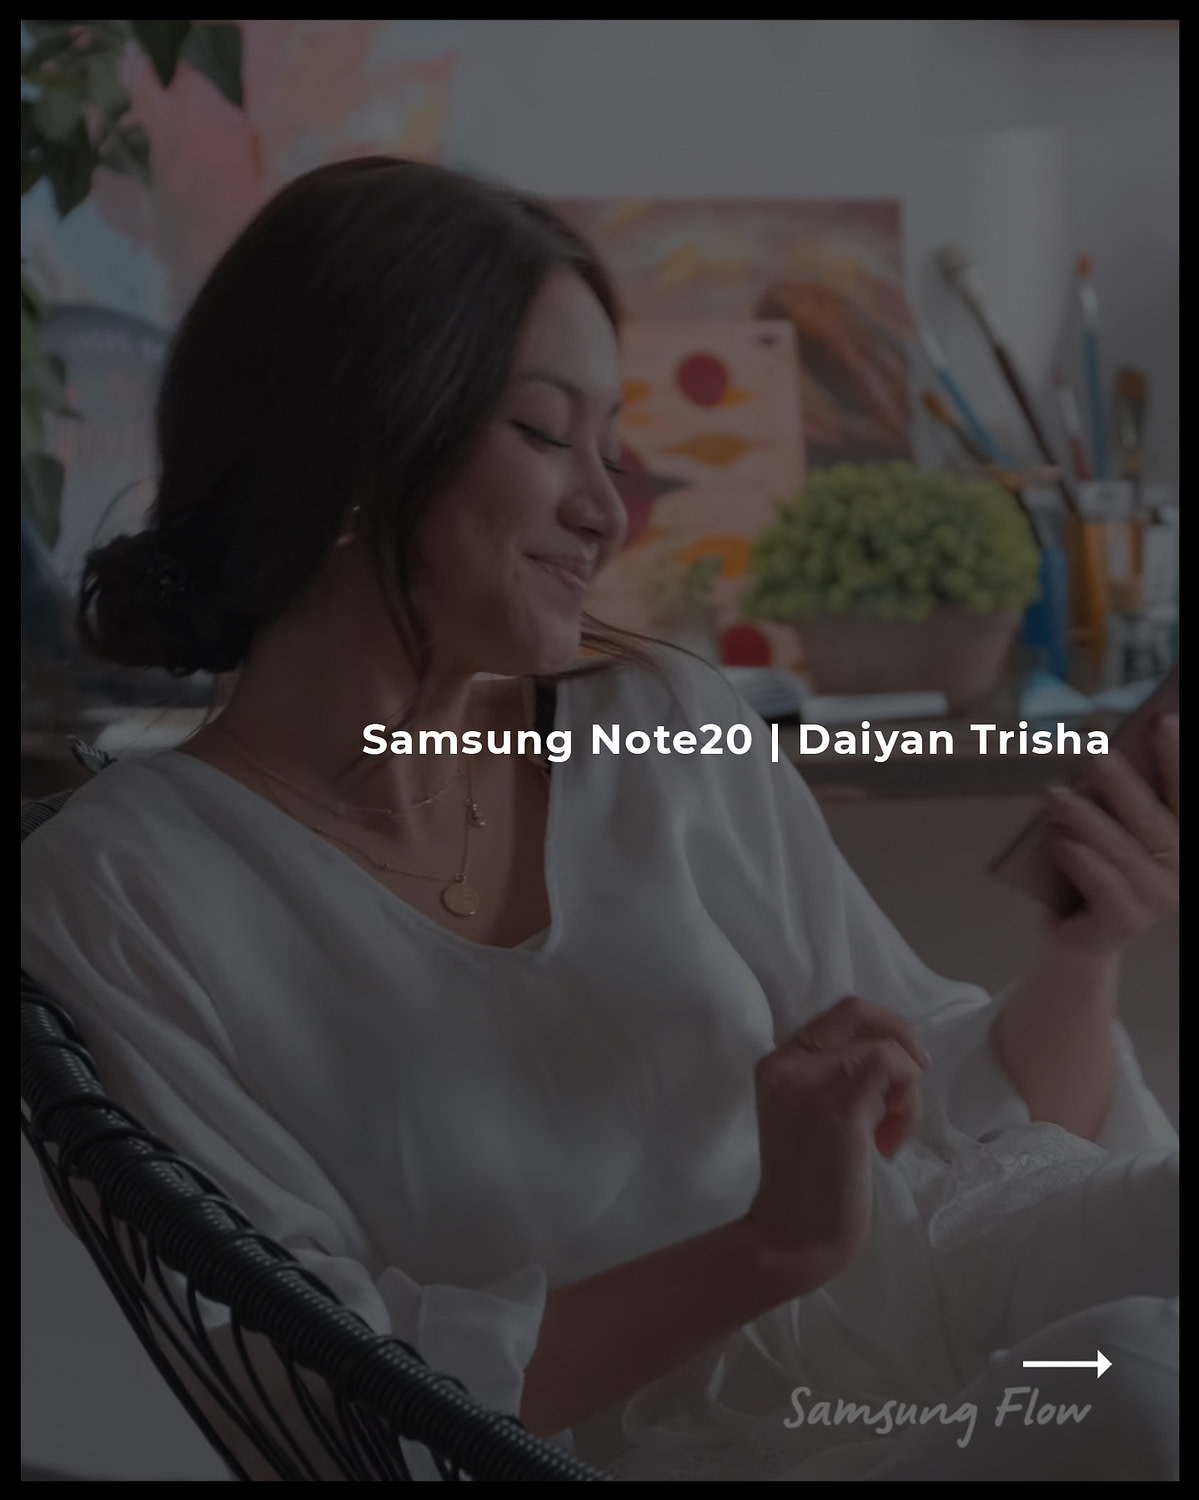 Samsung Note 20 - Daiyan Trisha - Aspect Ratio